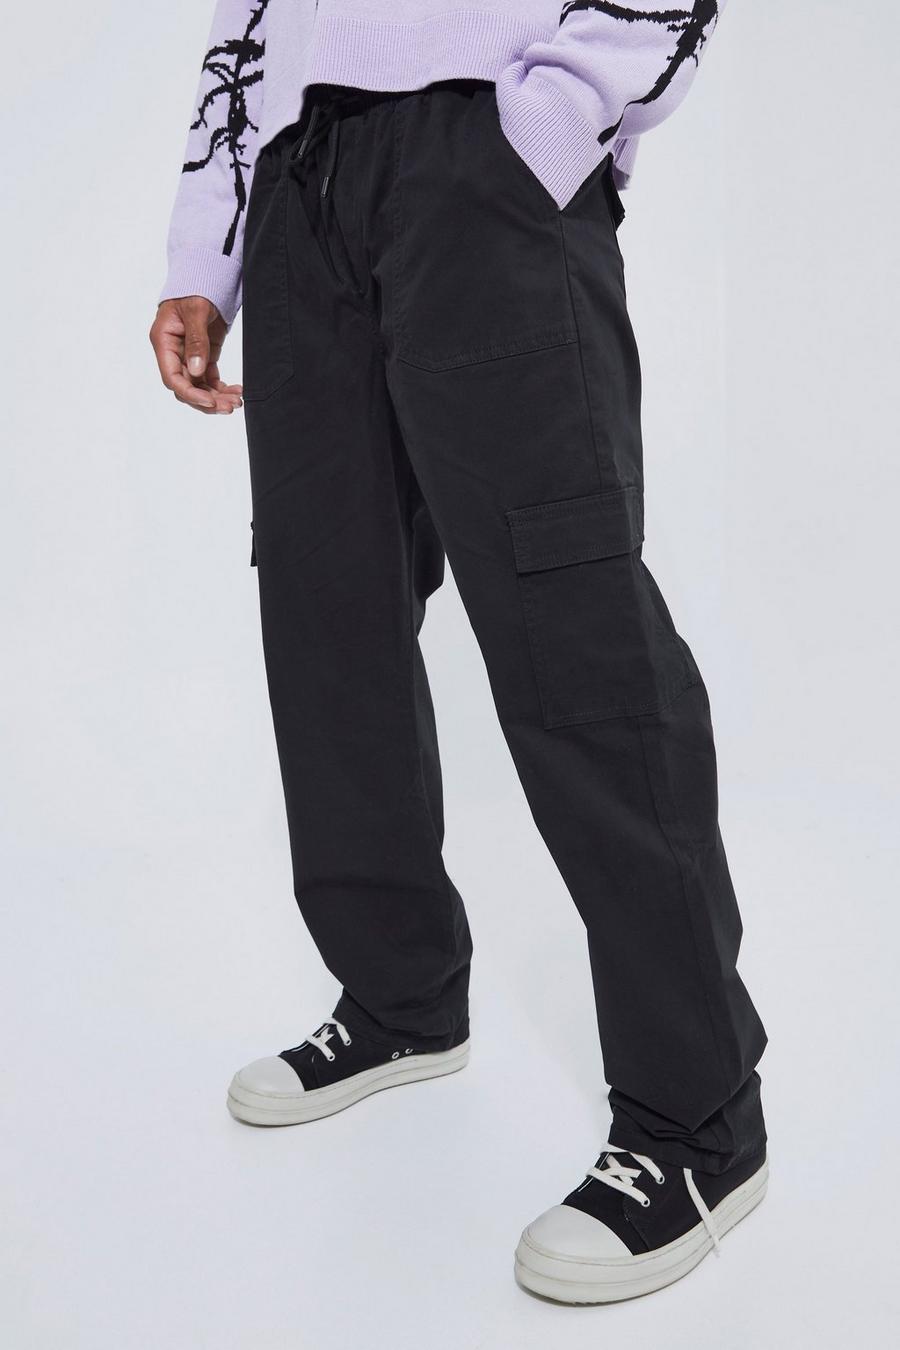 שחור מכנסי דגמ'ח בגזרה משוחררת עם רצועת מותניים אלסטית